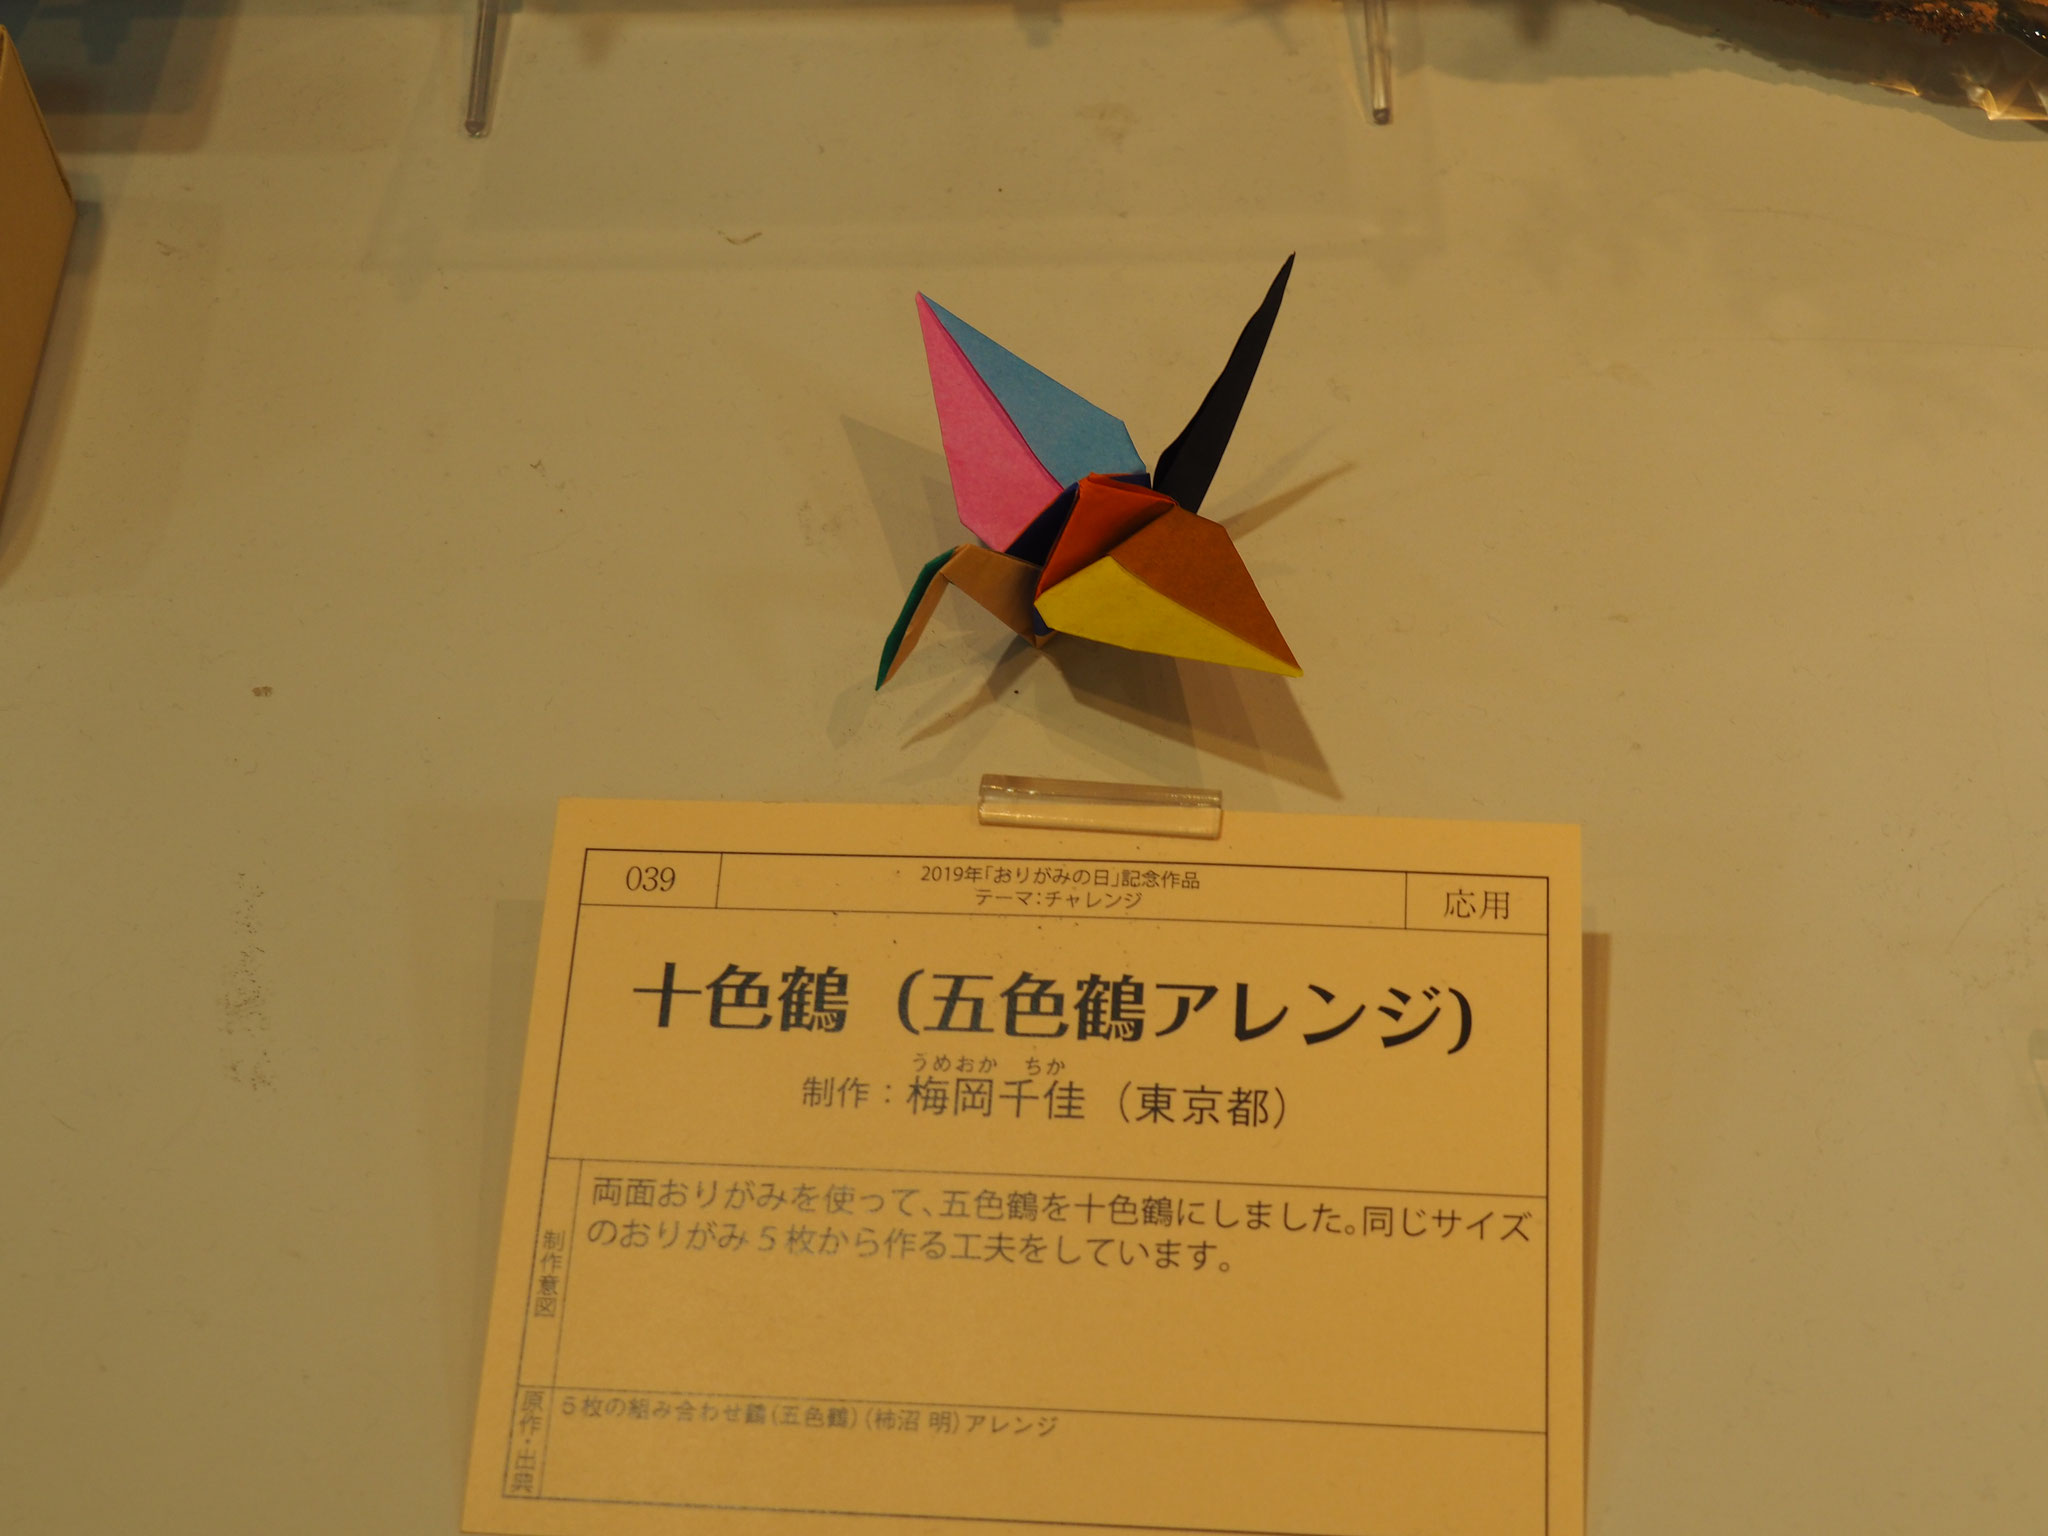 おりがみカーニバル Origami Noa